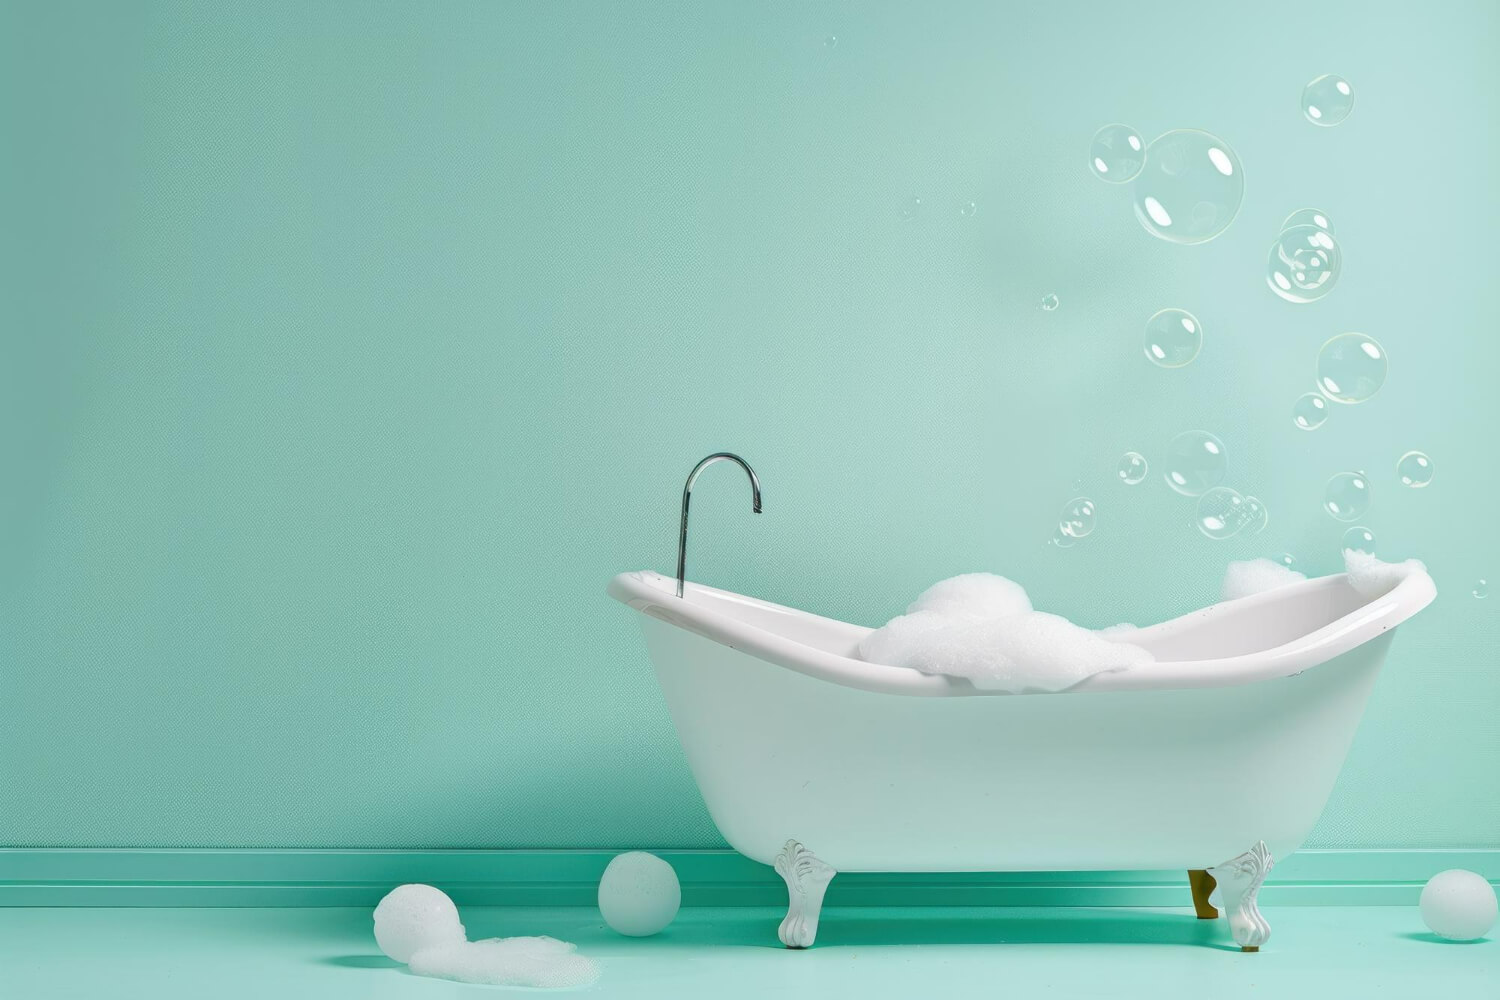 מהפכה בחדר האמבטיה: הלבשת אמבטיה ברמה הגבוהה ביותר